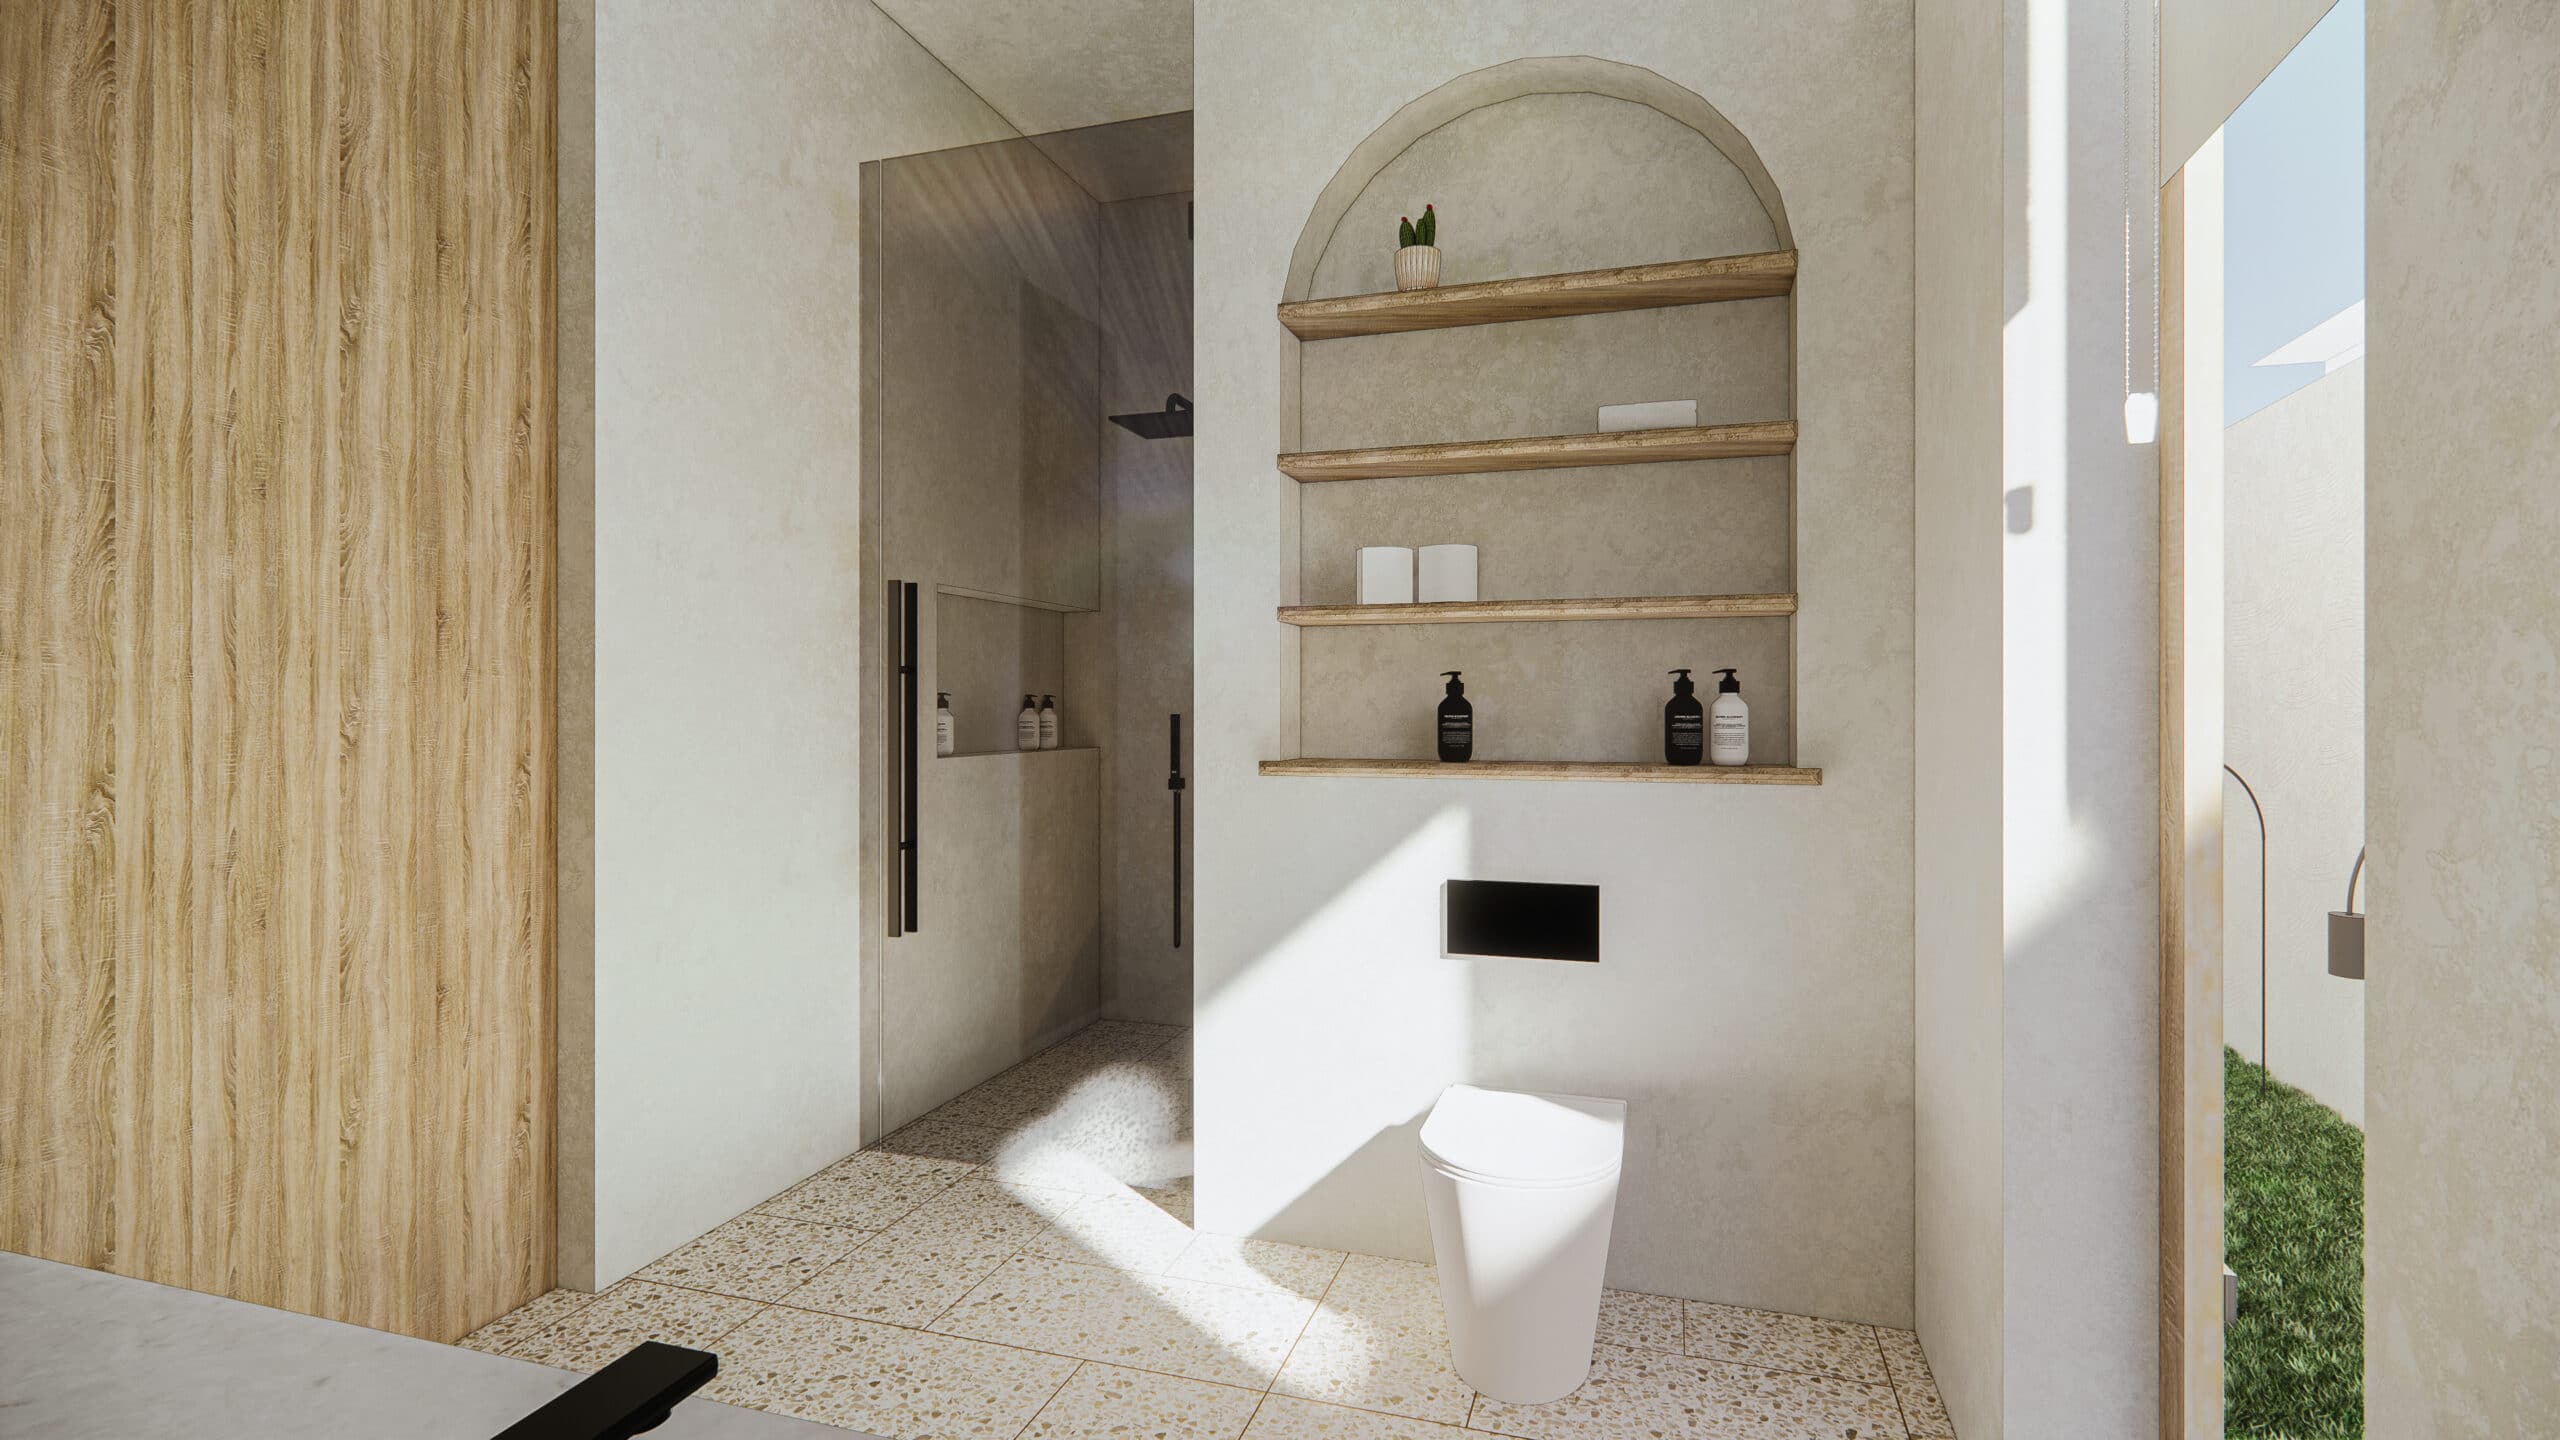 Design Assembly - Michael Utomo Villa - Bali Architect - Interior Design - Bali Villa - Bathroom - Toilet - Wall Facade - Wooden Facade